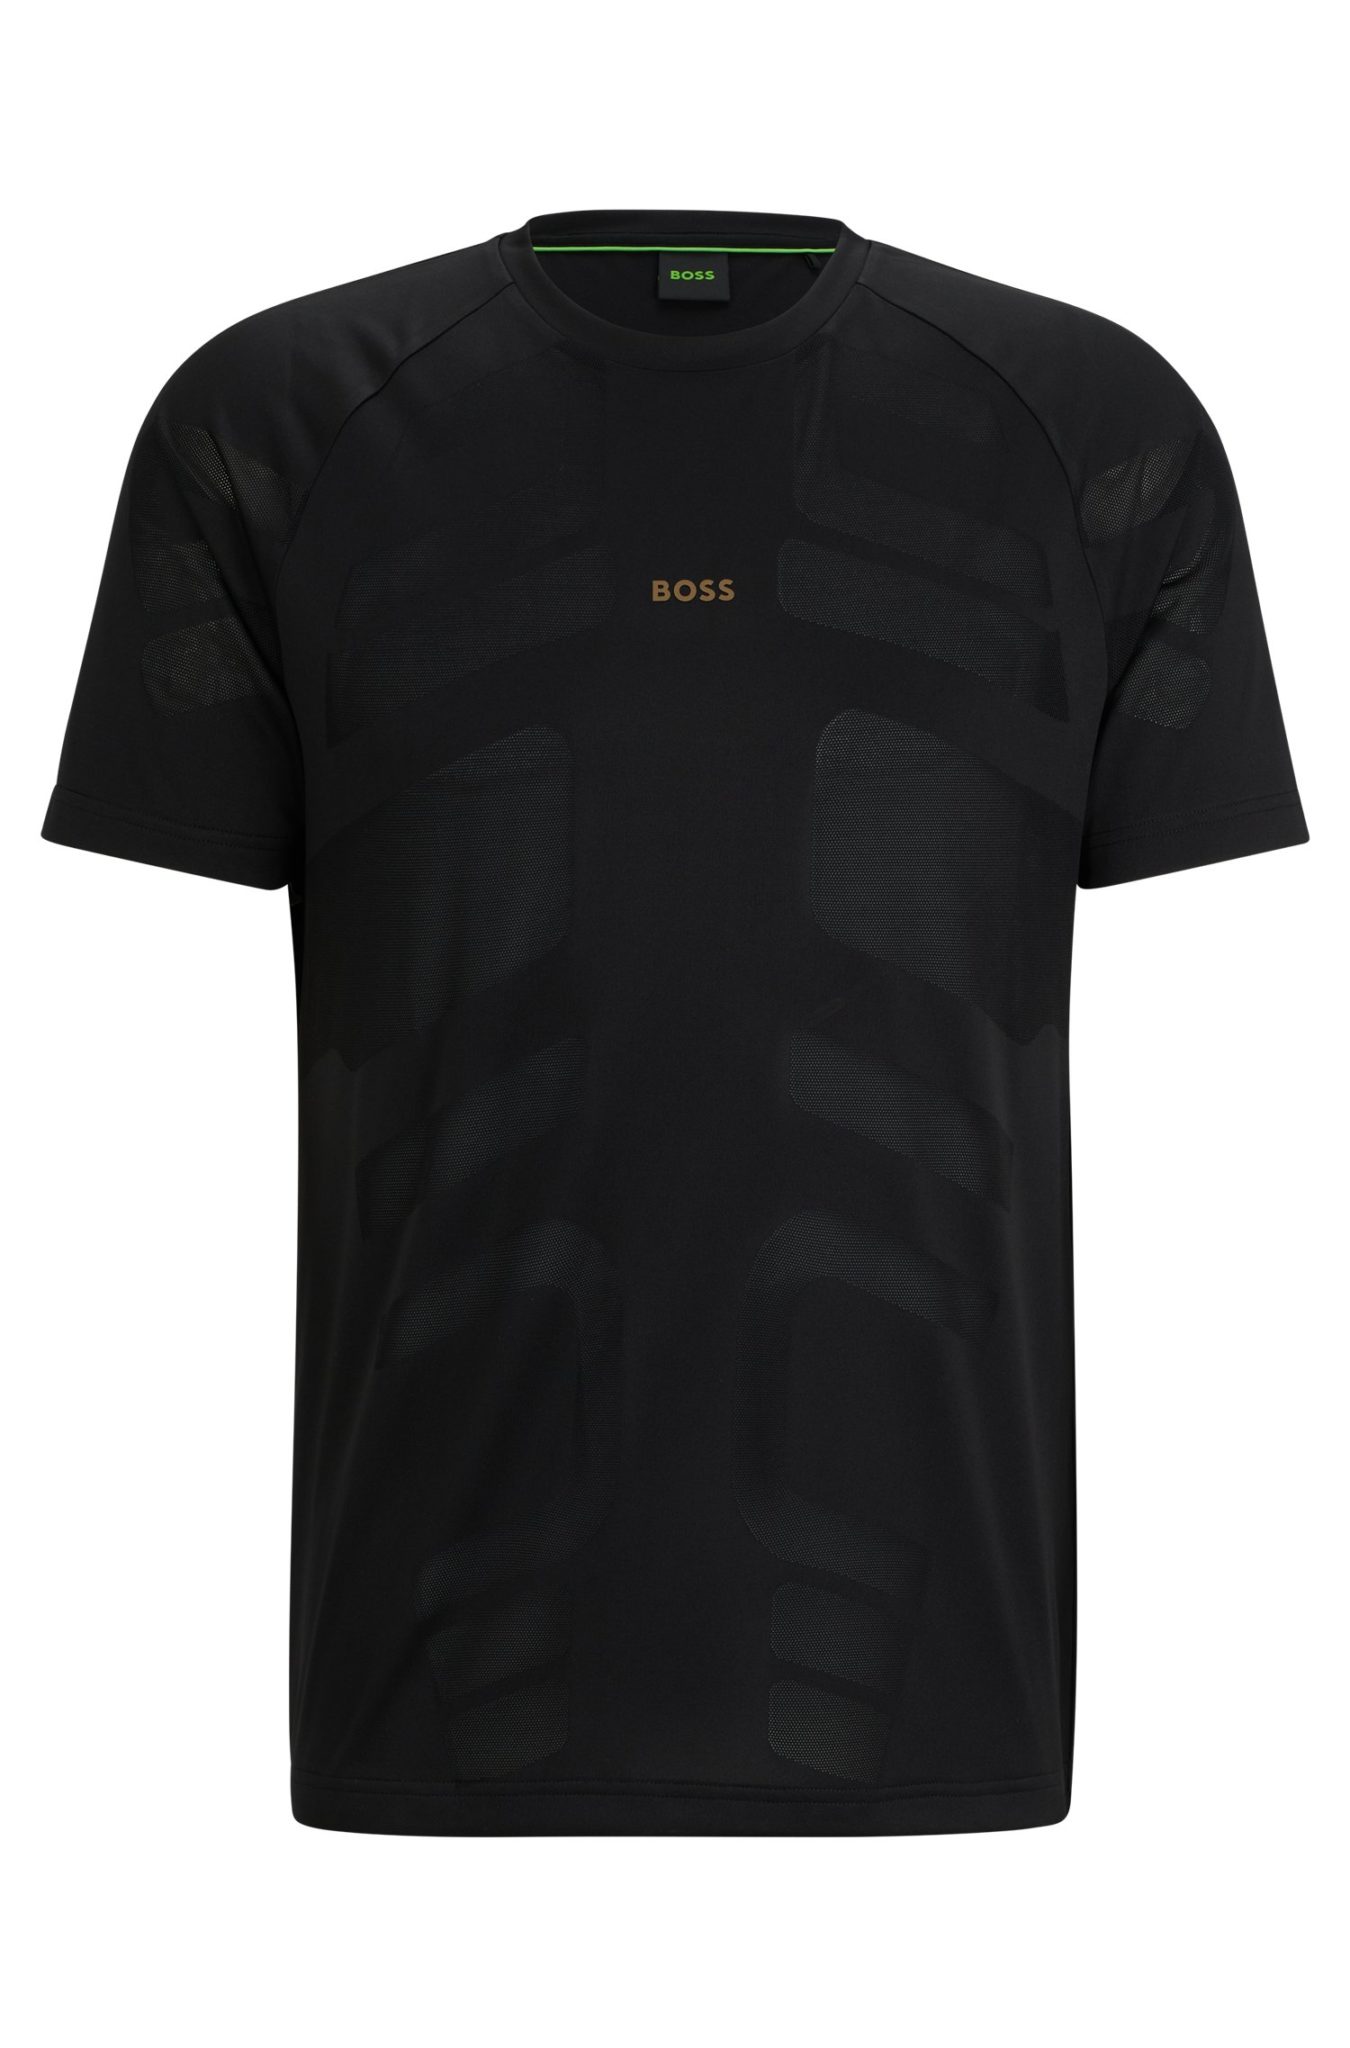 Hugo Boss T-shirt en jacquard performant avec logo réfléchissant décoratif